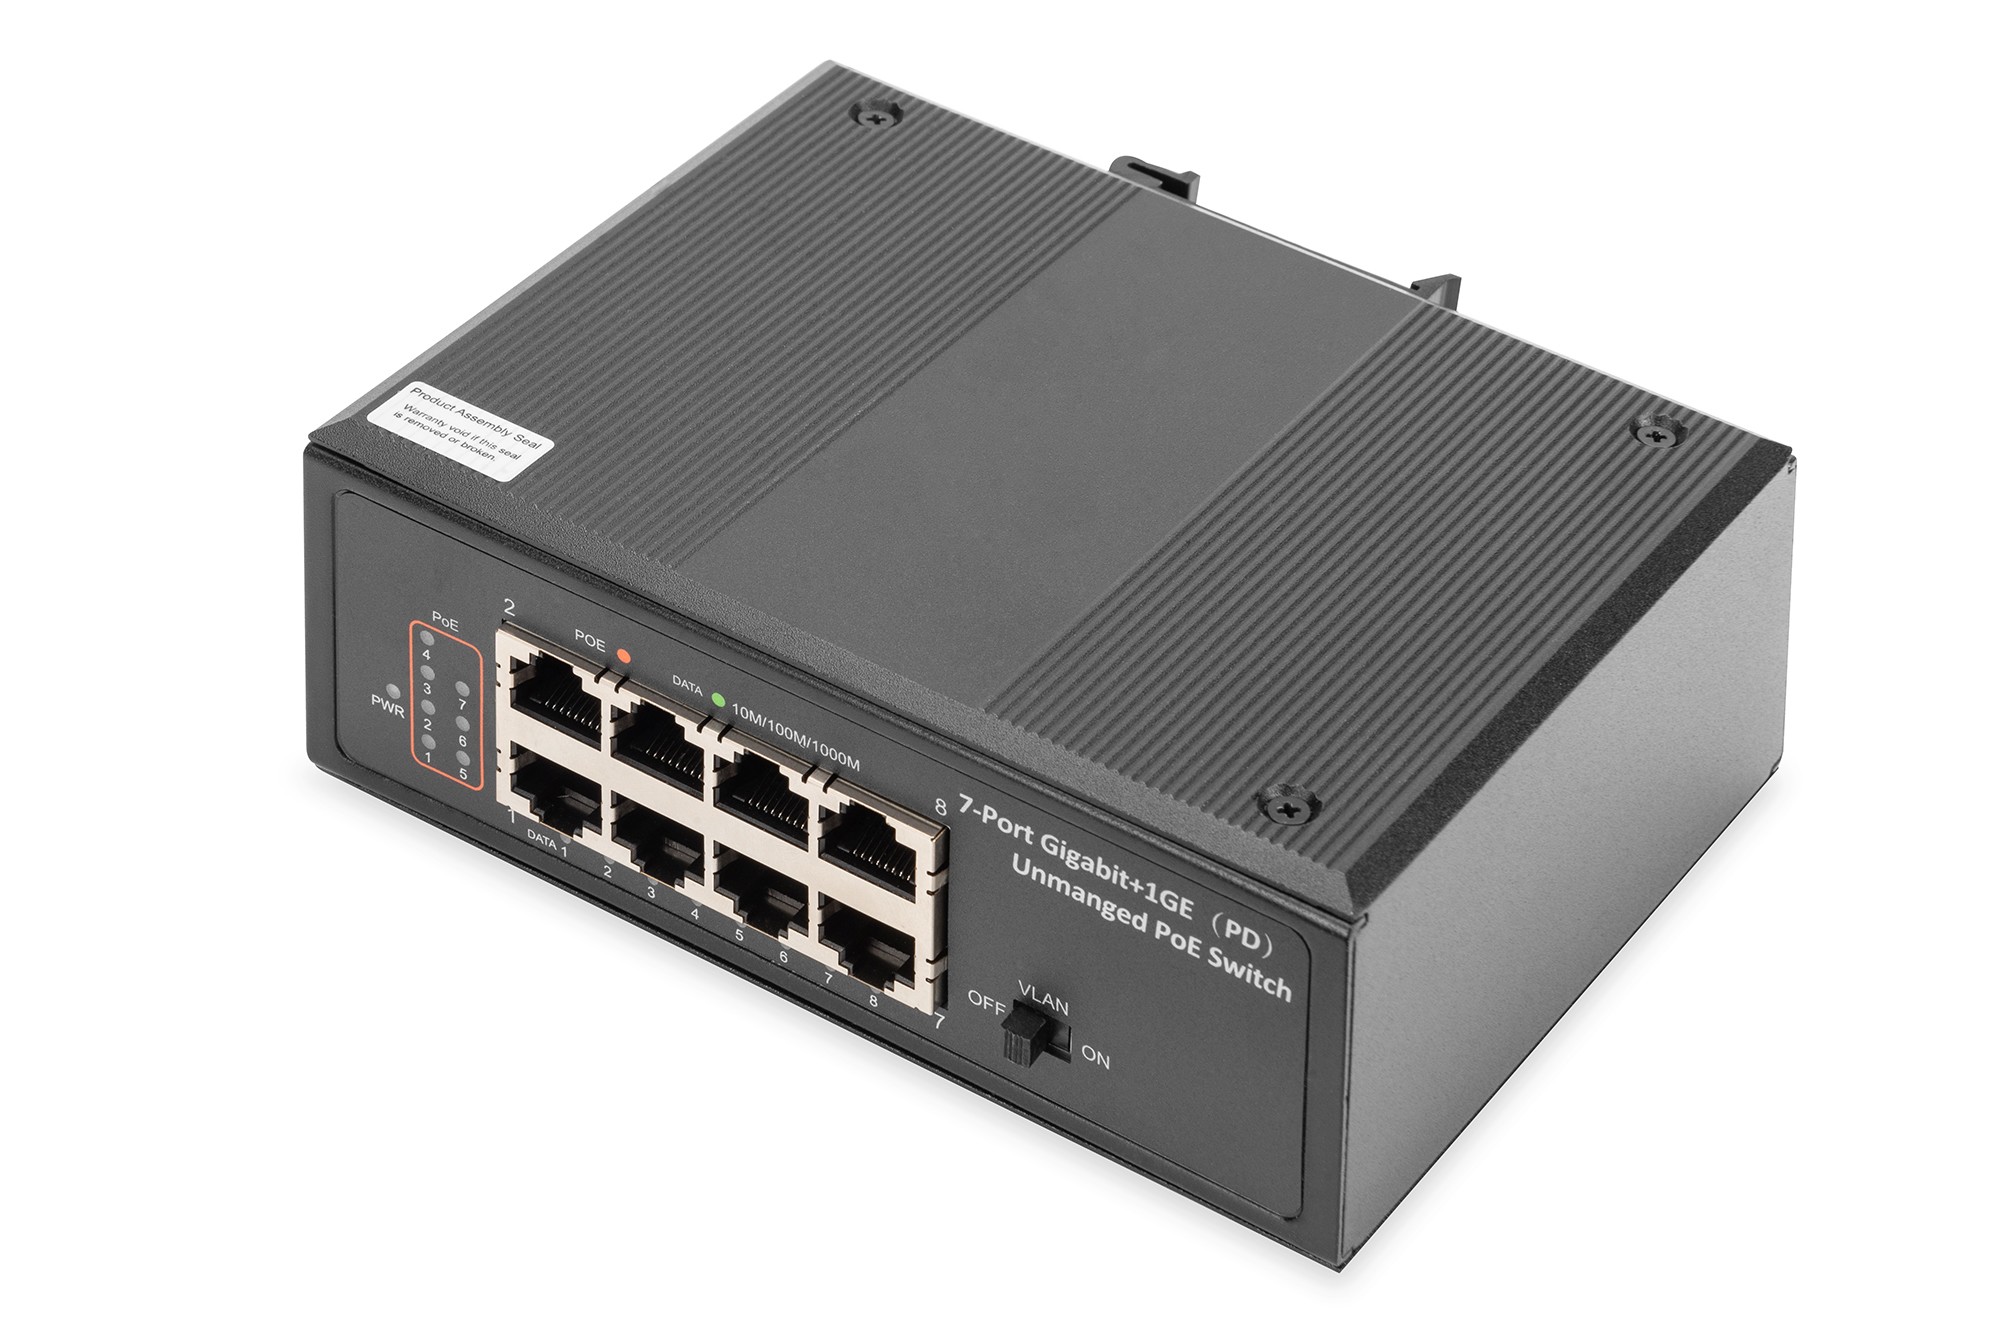 DN-651113  Interruptor Gigabit PoE+ industrial de 7 puertos con 1 puerto PD IEEE802.3af/at, riel DIN, intervalo de temperatura amplio